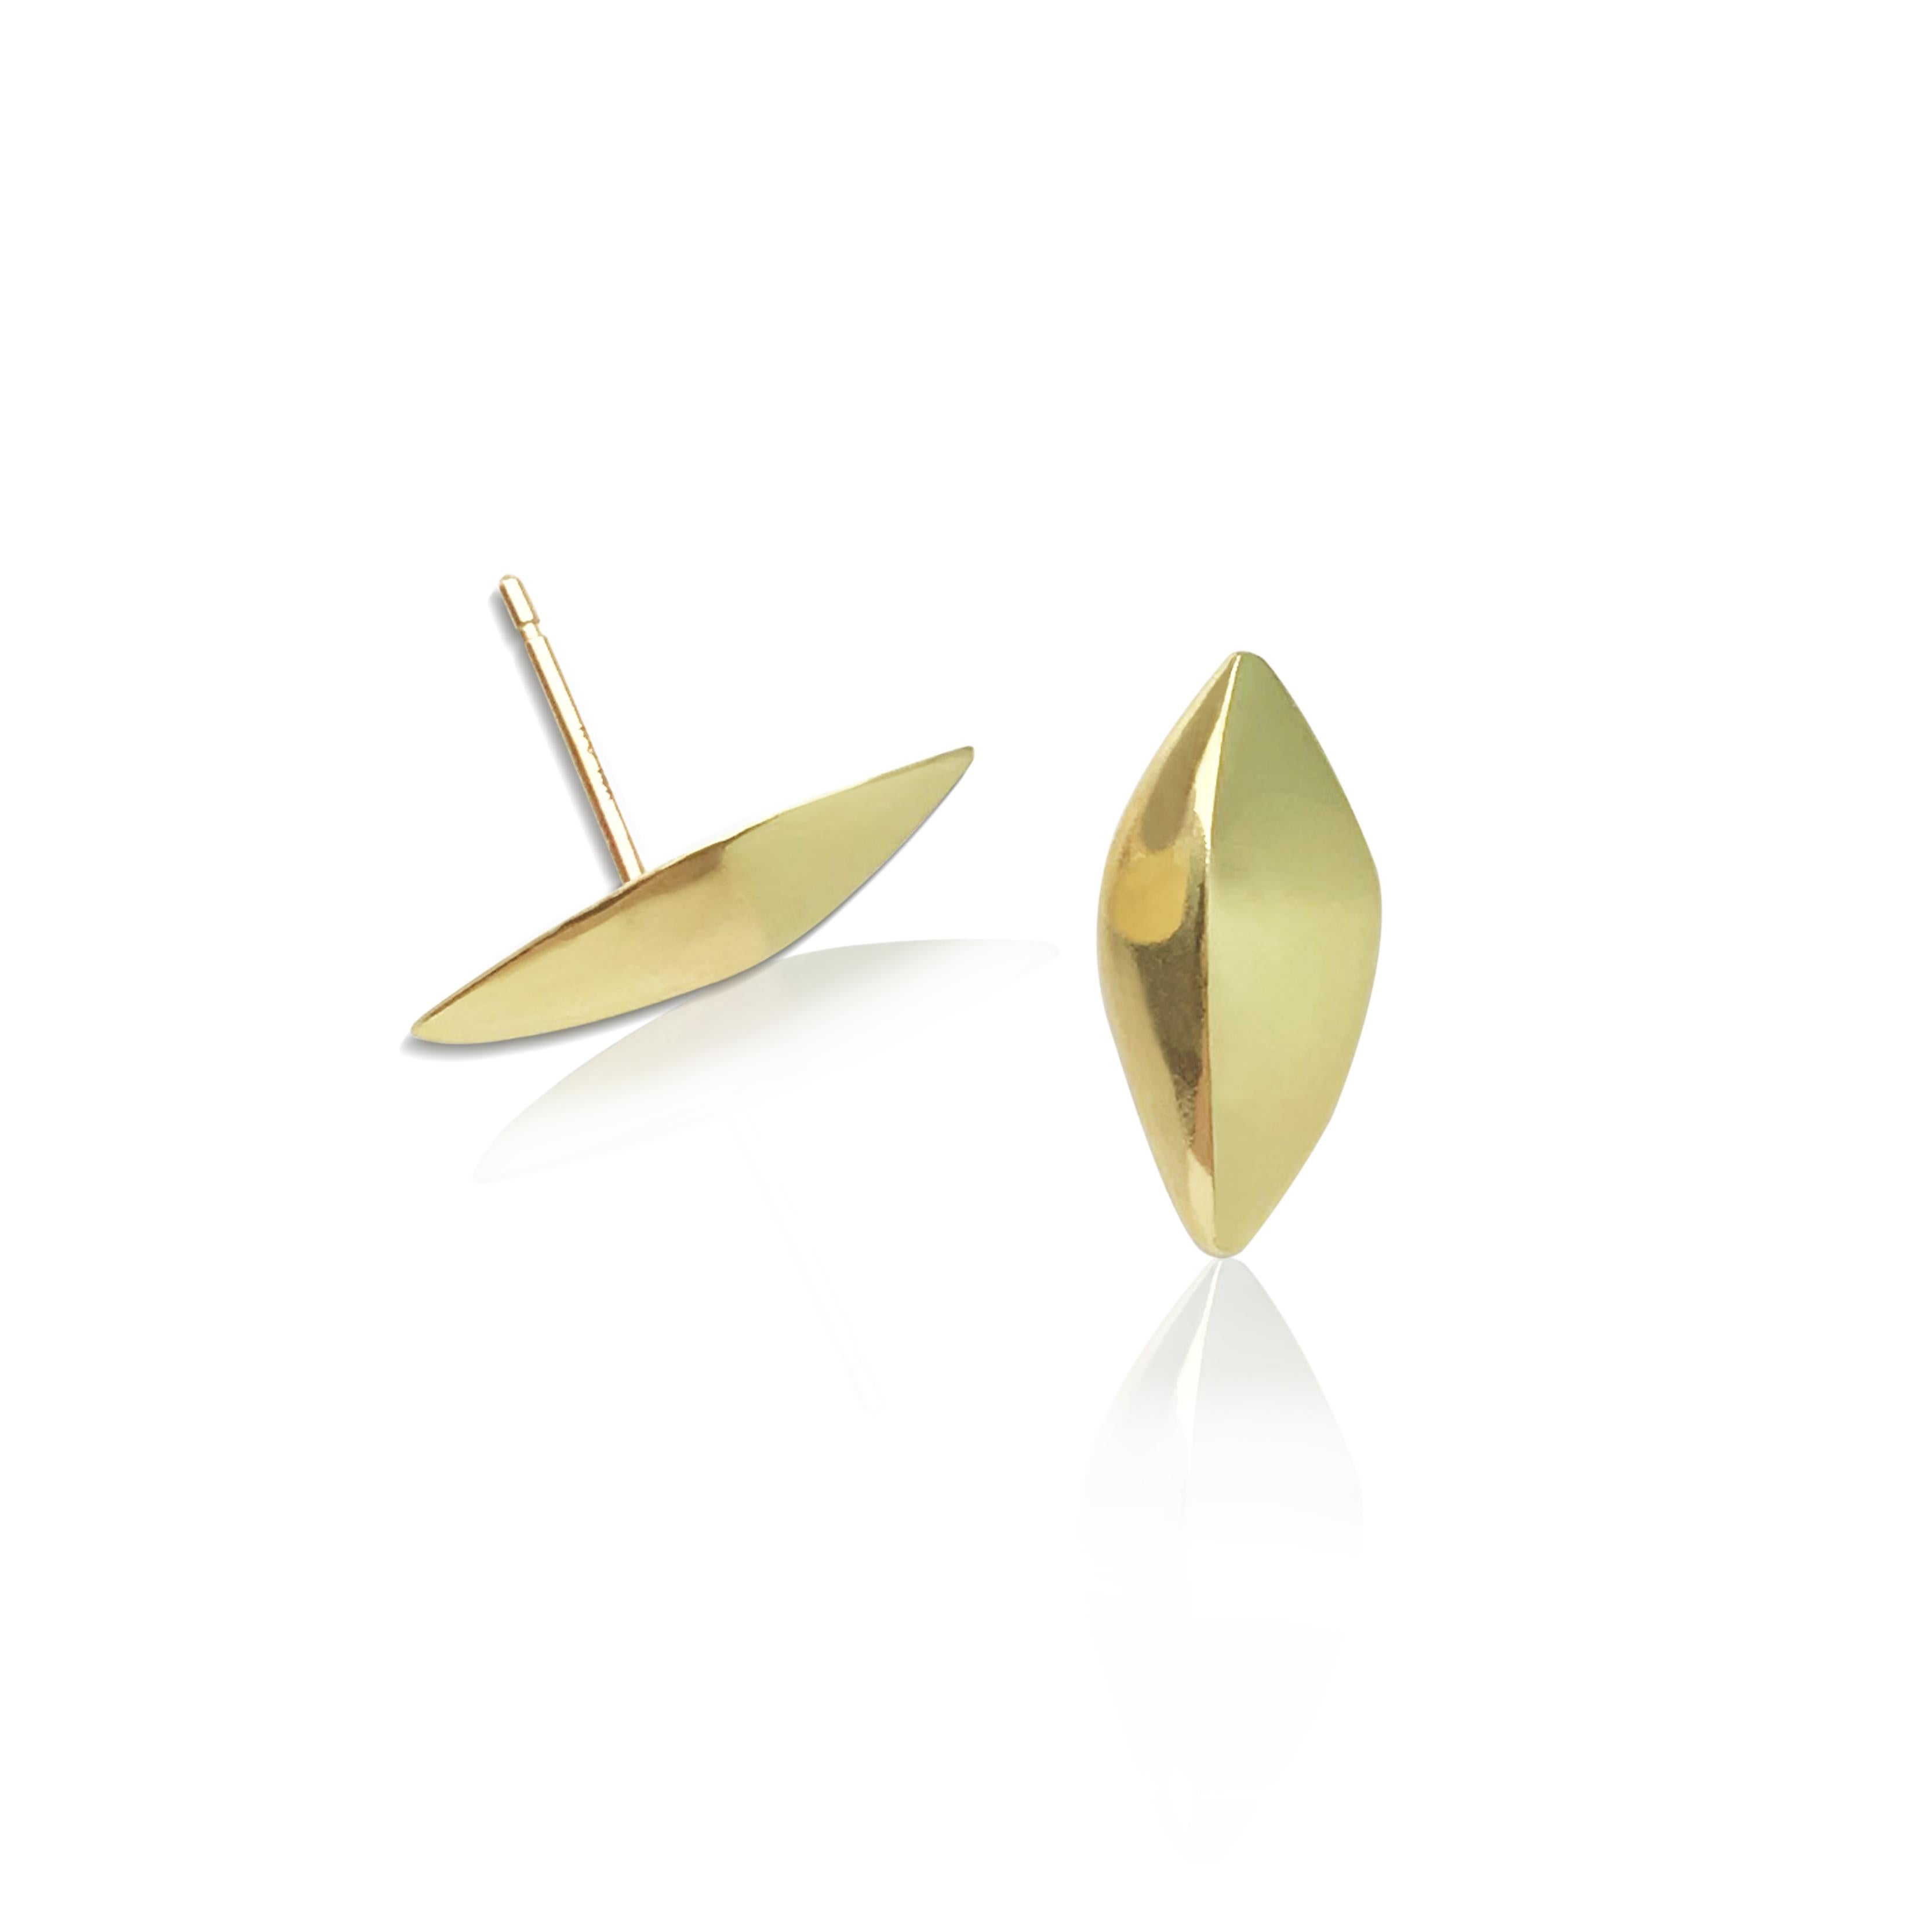 Nos boucles d'oreilles en or FAIRMINED Flora Leaf Post Earrings de notre Collection Modern Story évoquent la simplicité minimaliste d'une feuille légèrement posée sur votre oreille. Faciles à porter et de petite taille, elles peuvent être portées